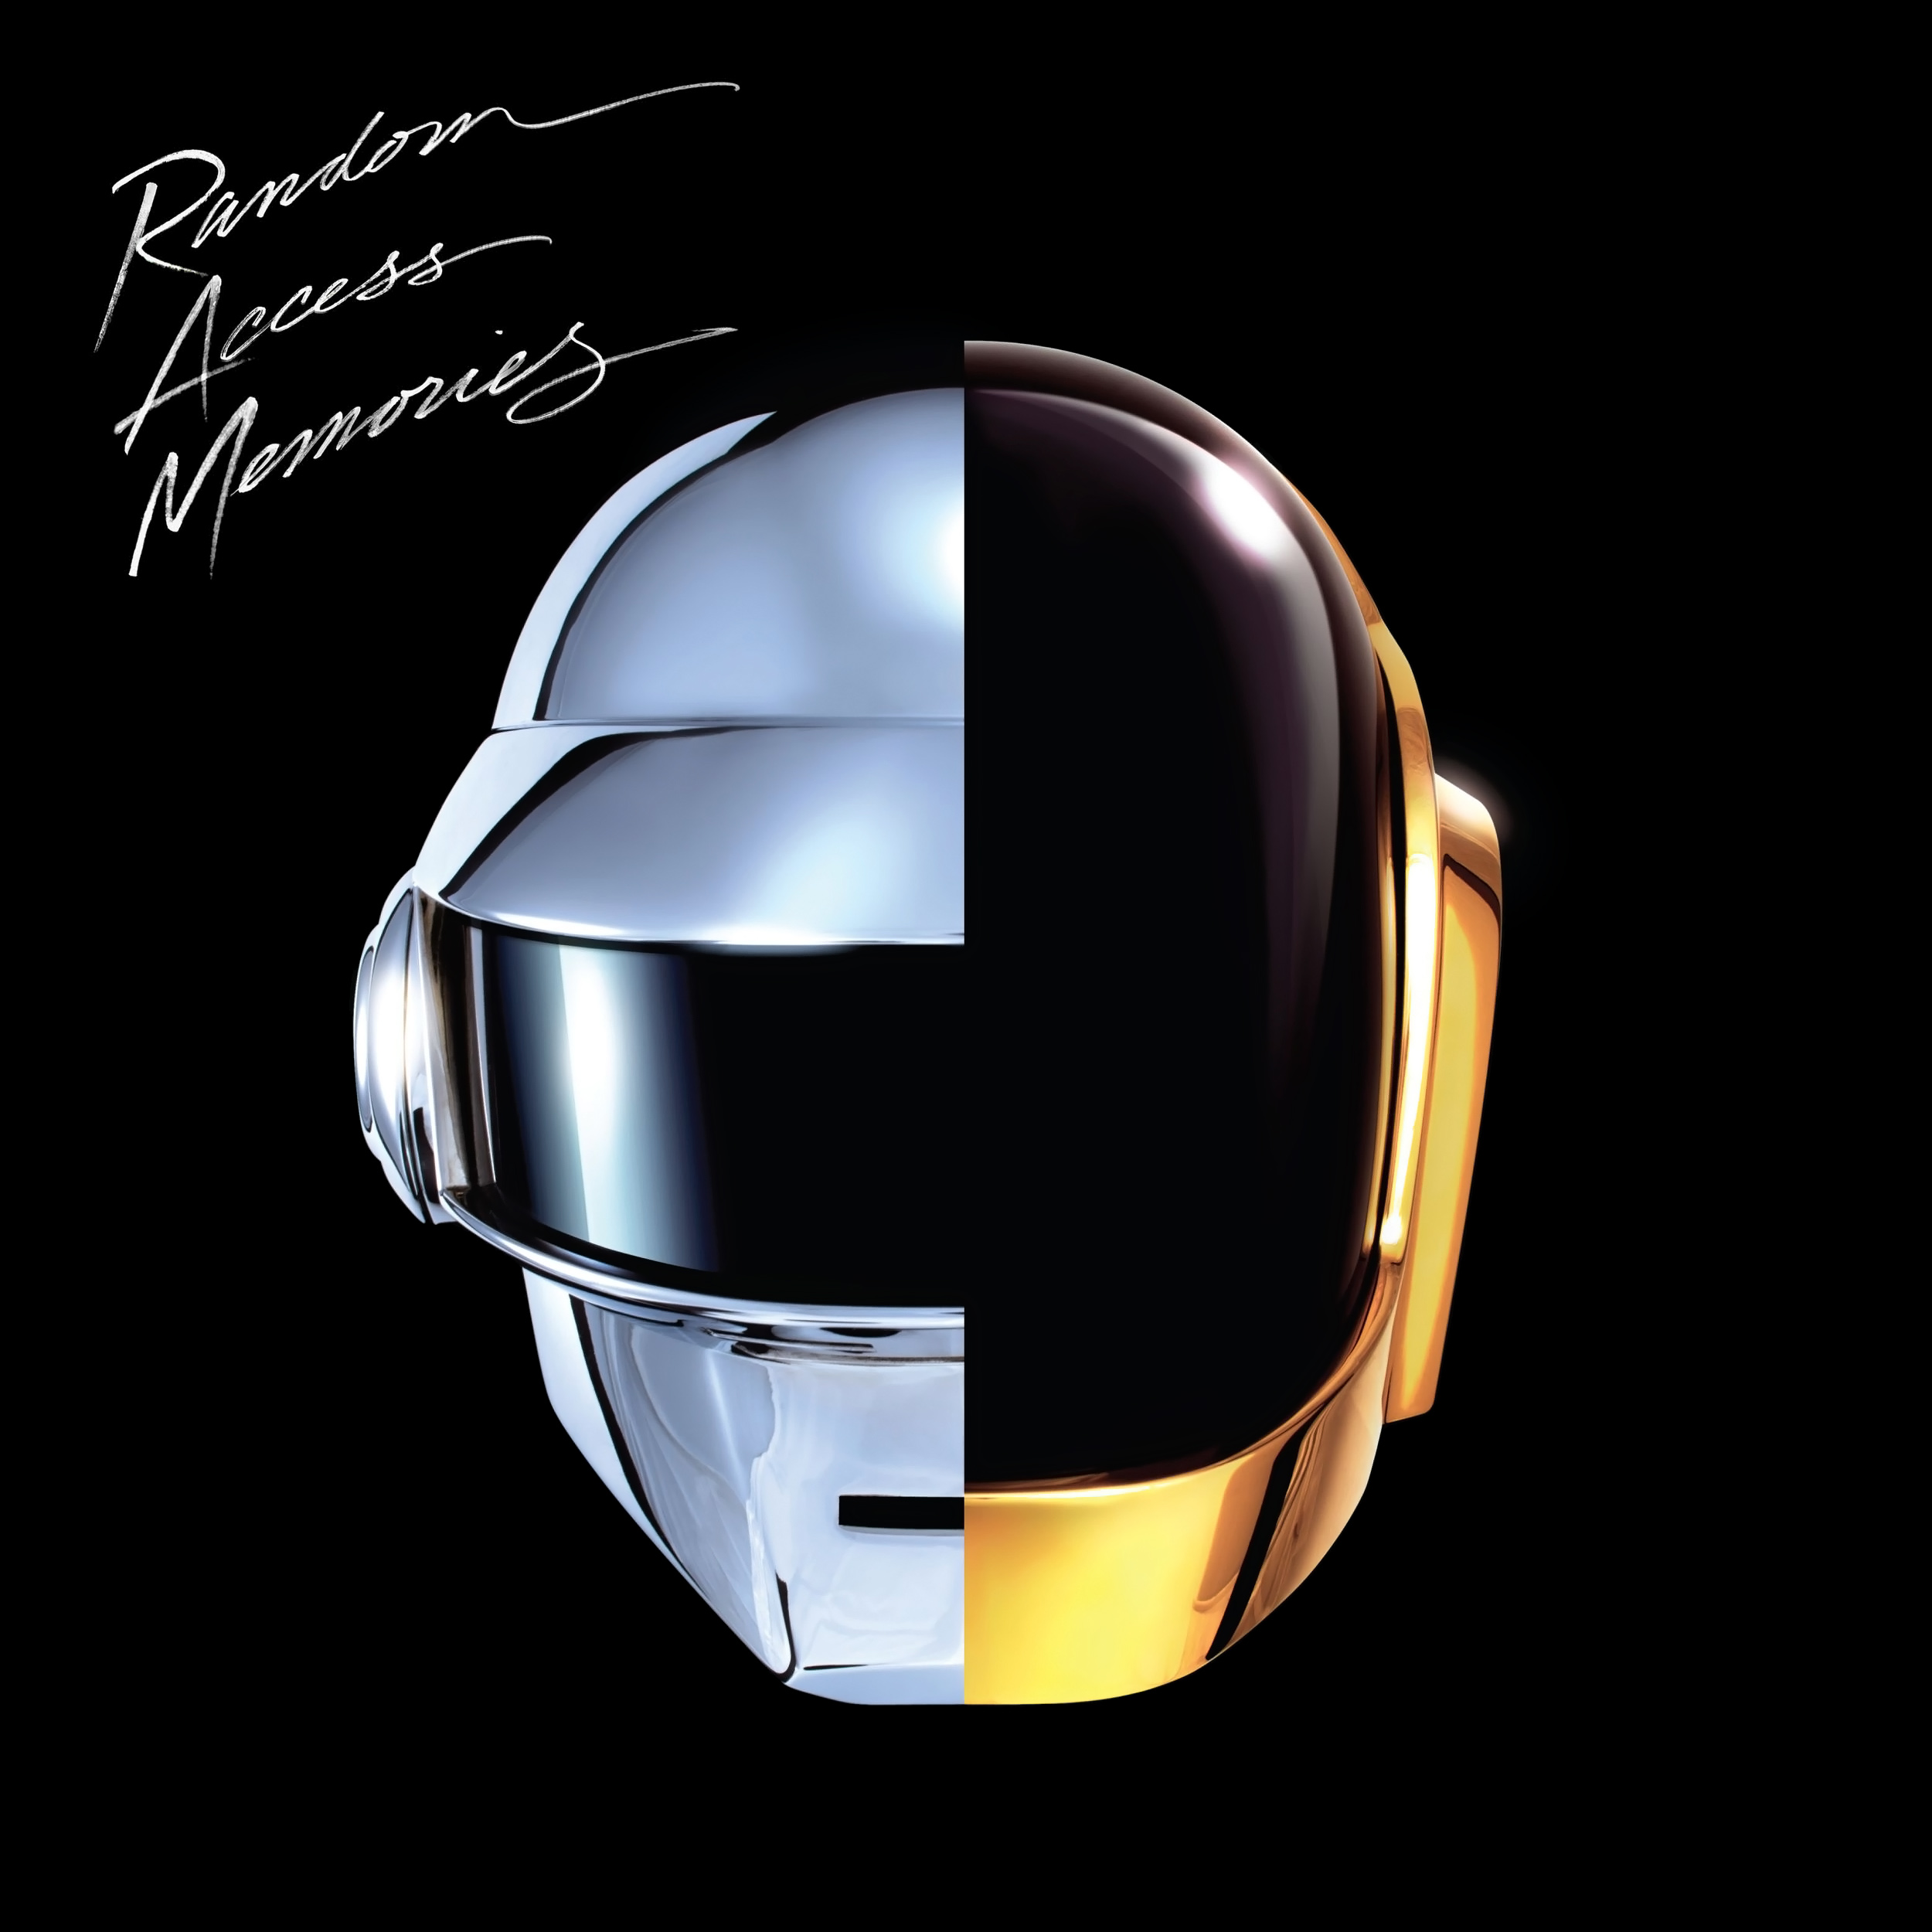 
Album Artist: Daft Punk / Album Title: Random Access Memories